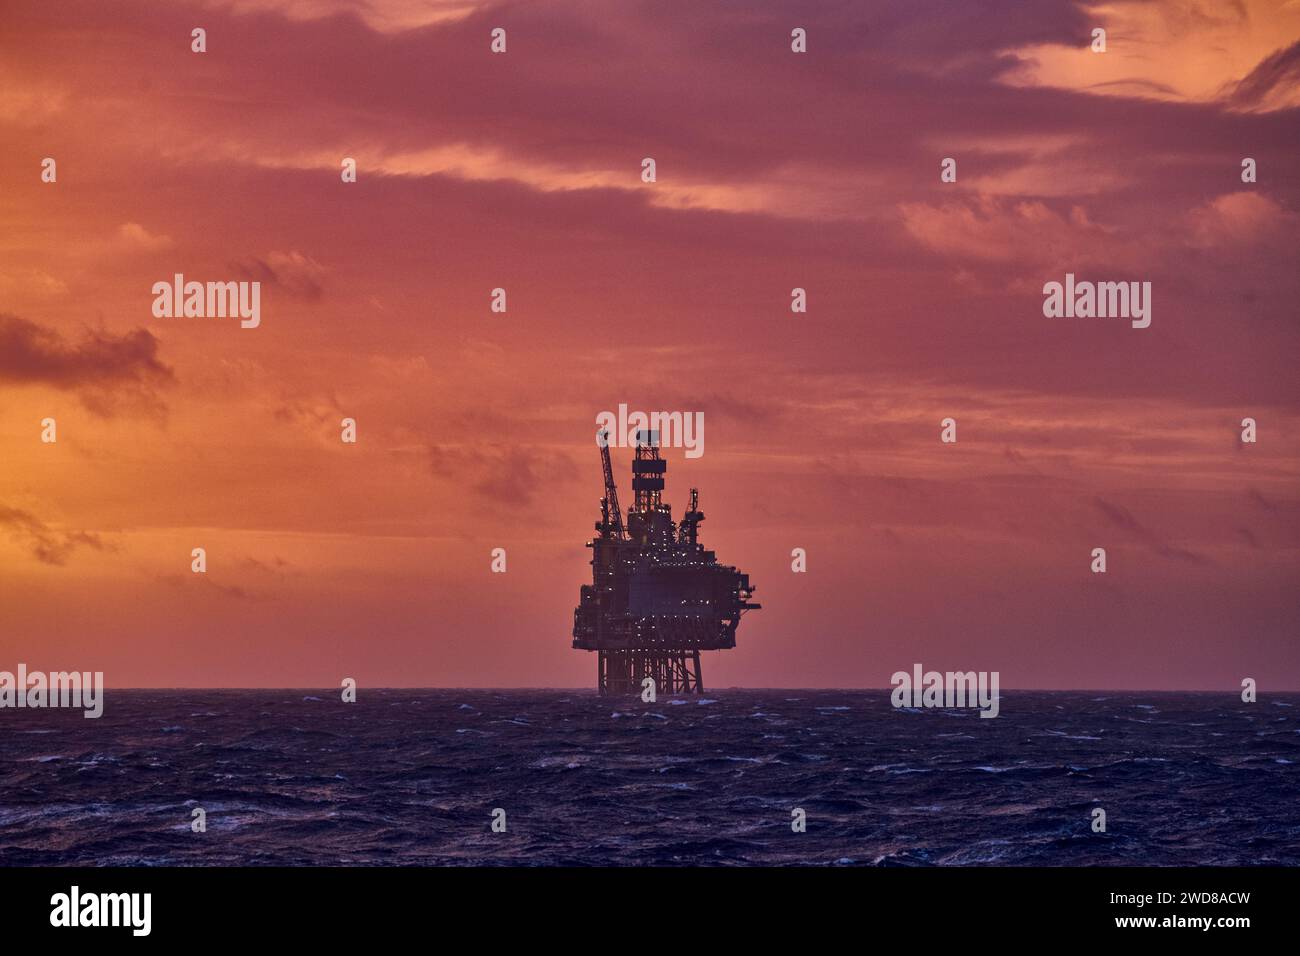 Vue panoramique de l'installation pétrolière et gazière offshore dans la mer pendant un beau coucher de soleil coloré en été. Banque D'Images